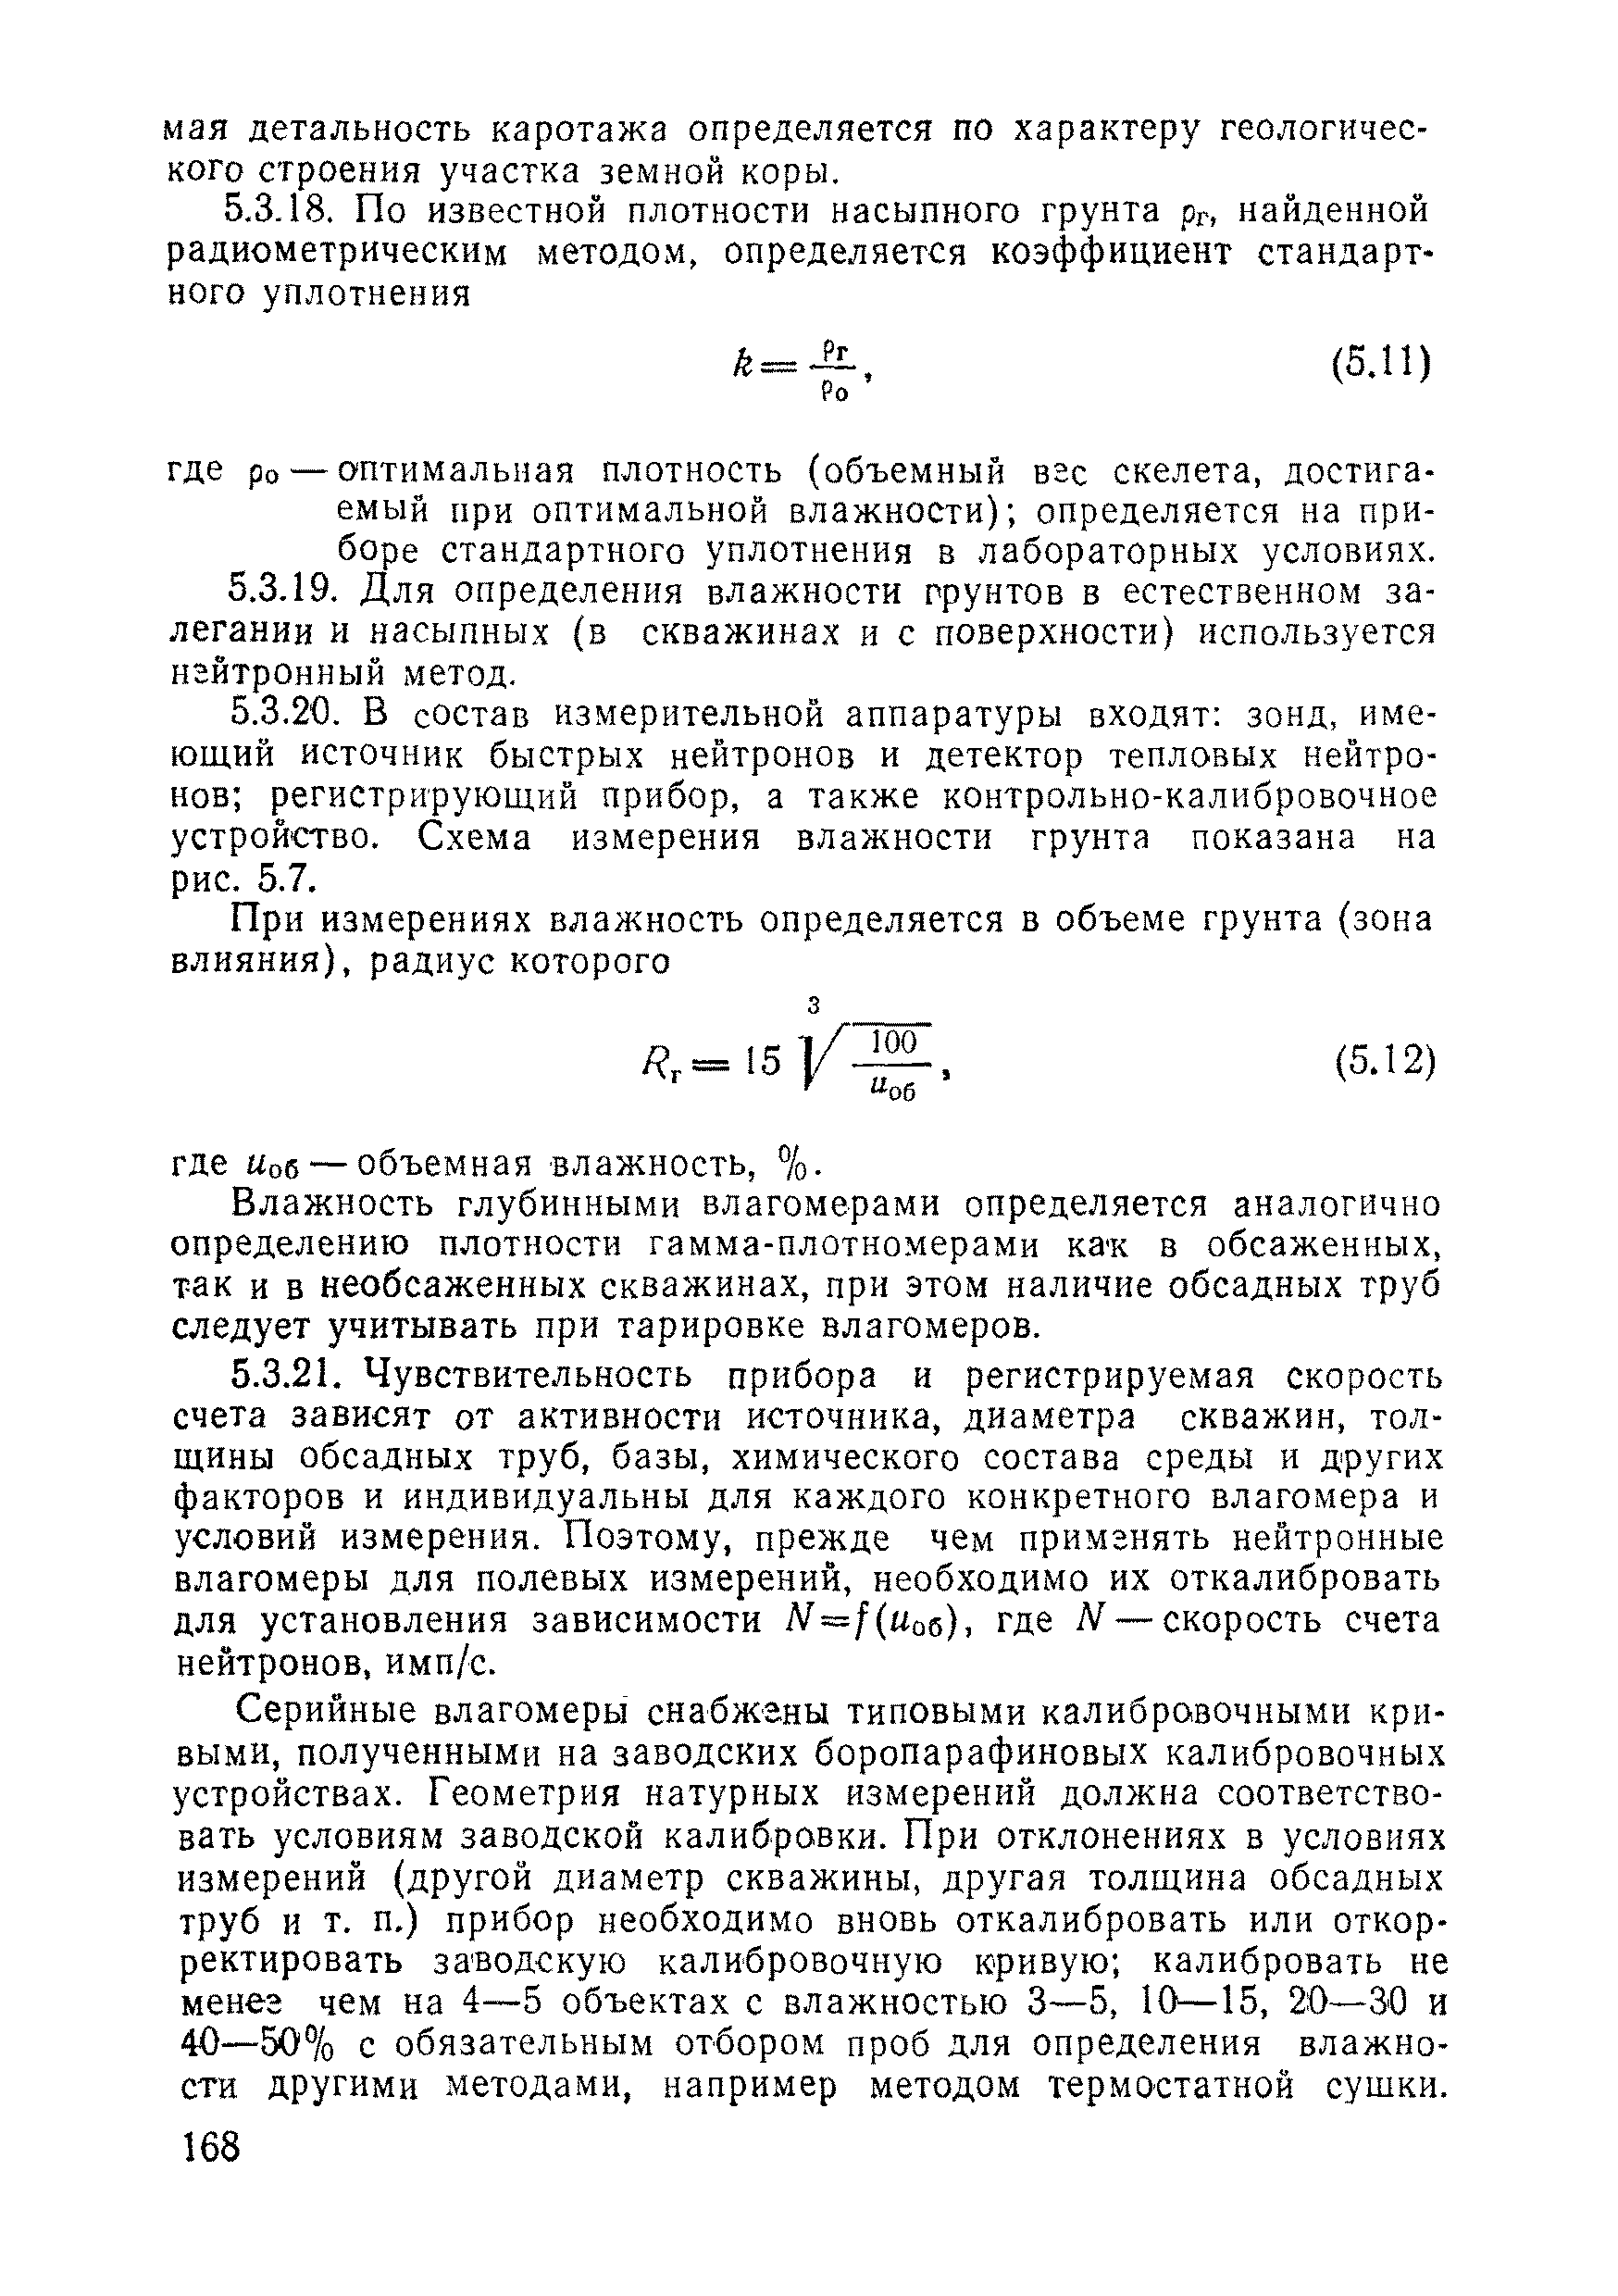 ВСН 11-75/МО СССР